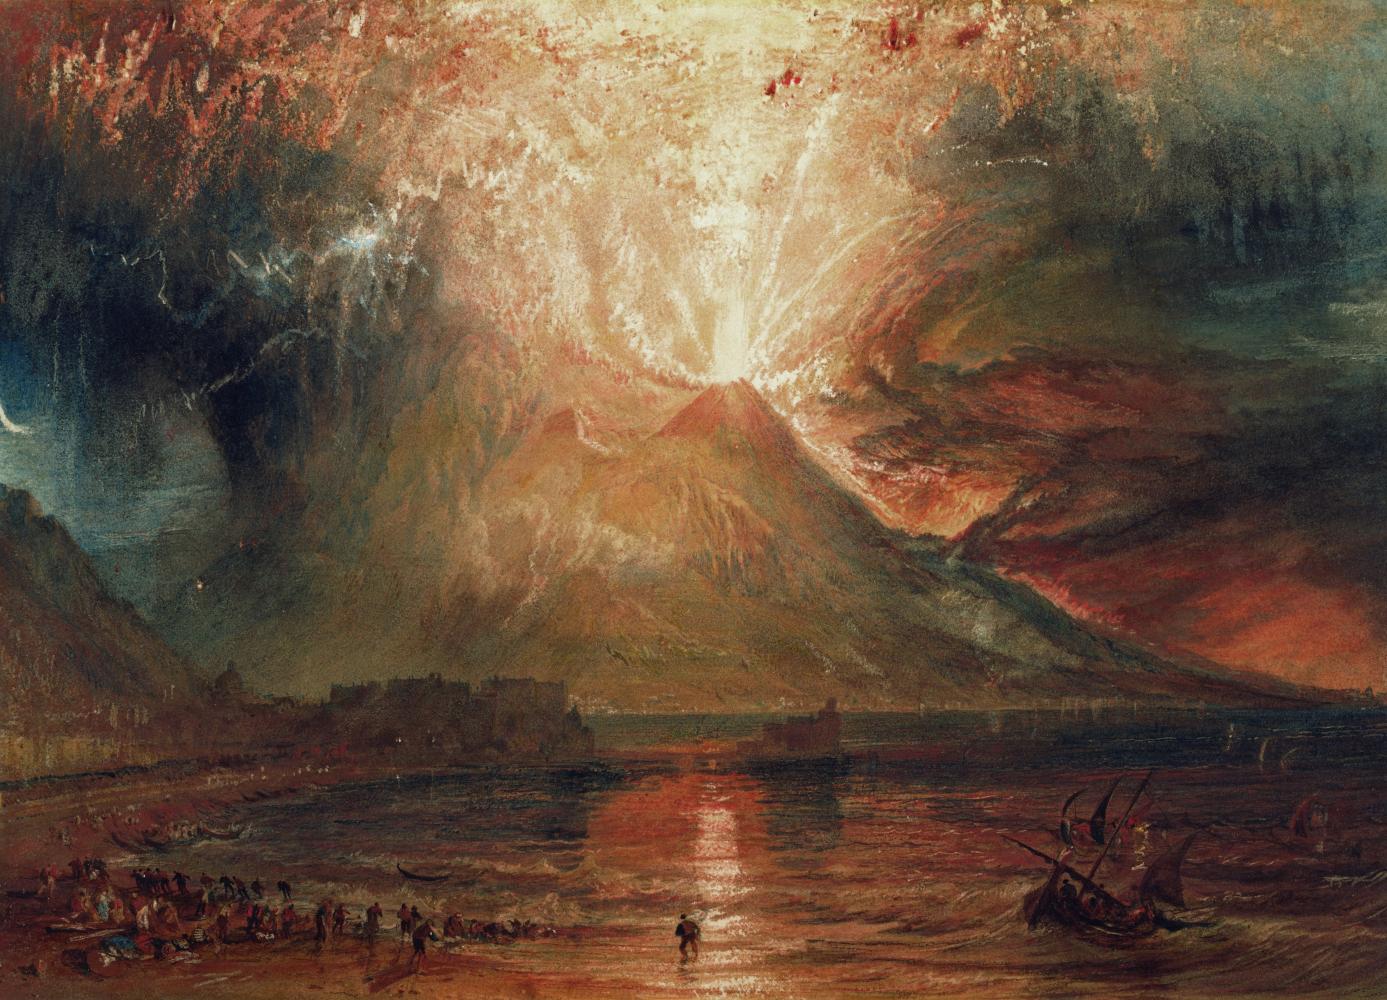 J. M. W. Turner "Vesuvius in Eruption", 1817–20